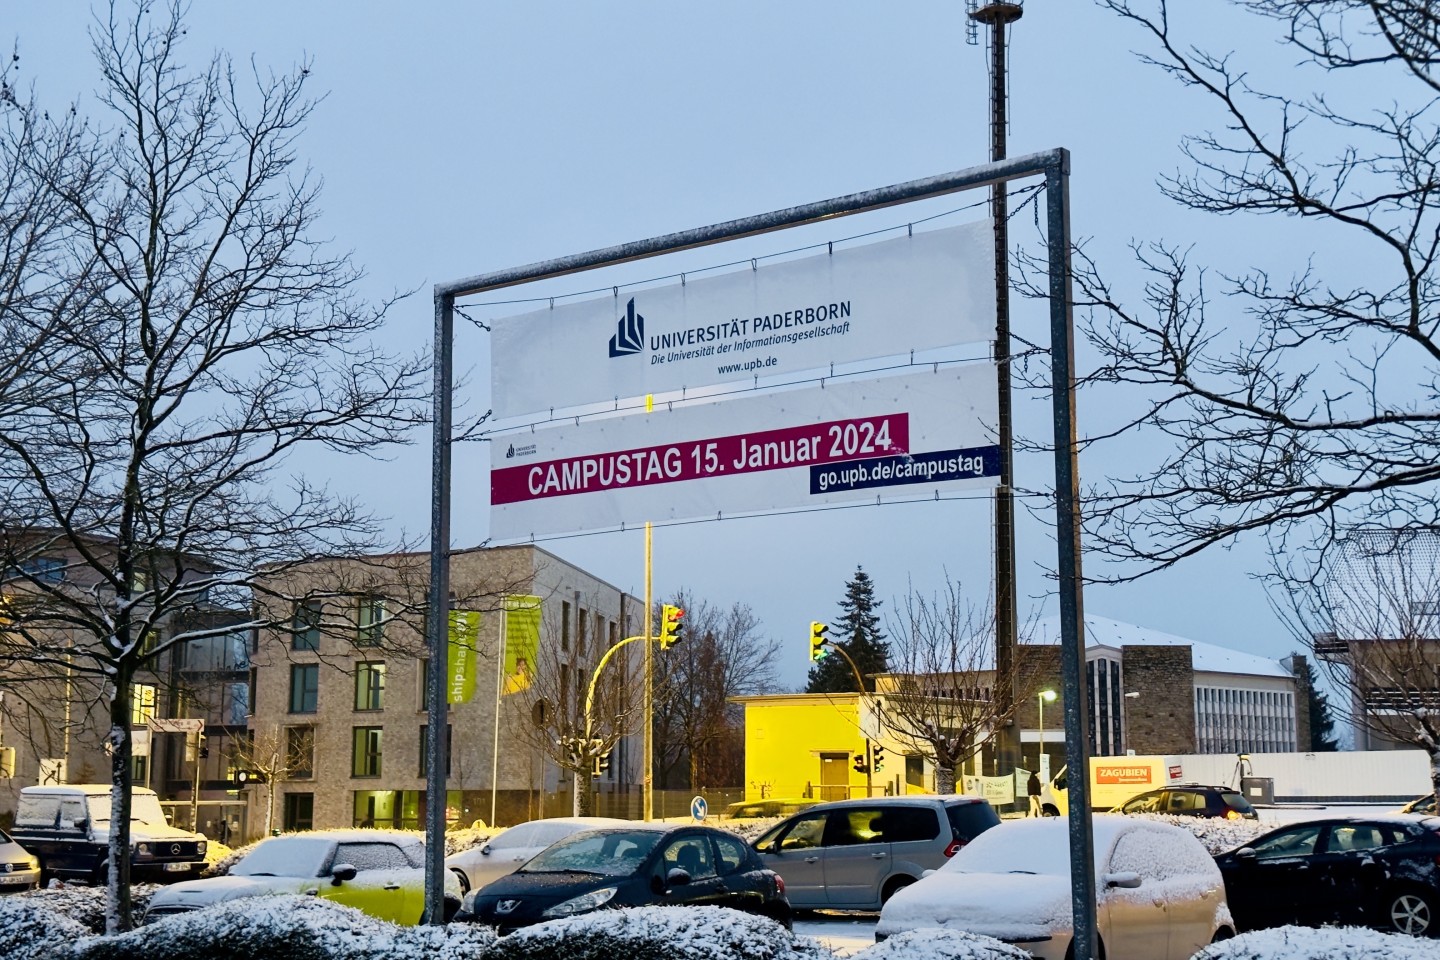 Fotounterschrift: Der Campustag an der Uni Paderborn: Für SchülerInnen eine gute Möglichkeit, realistische Einblicke in den Studienalltag zu bekommen.